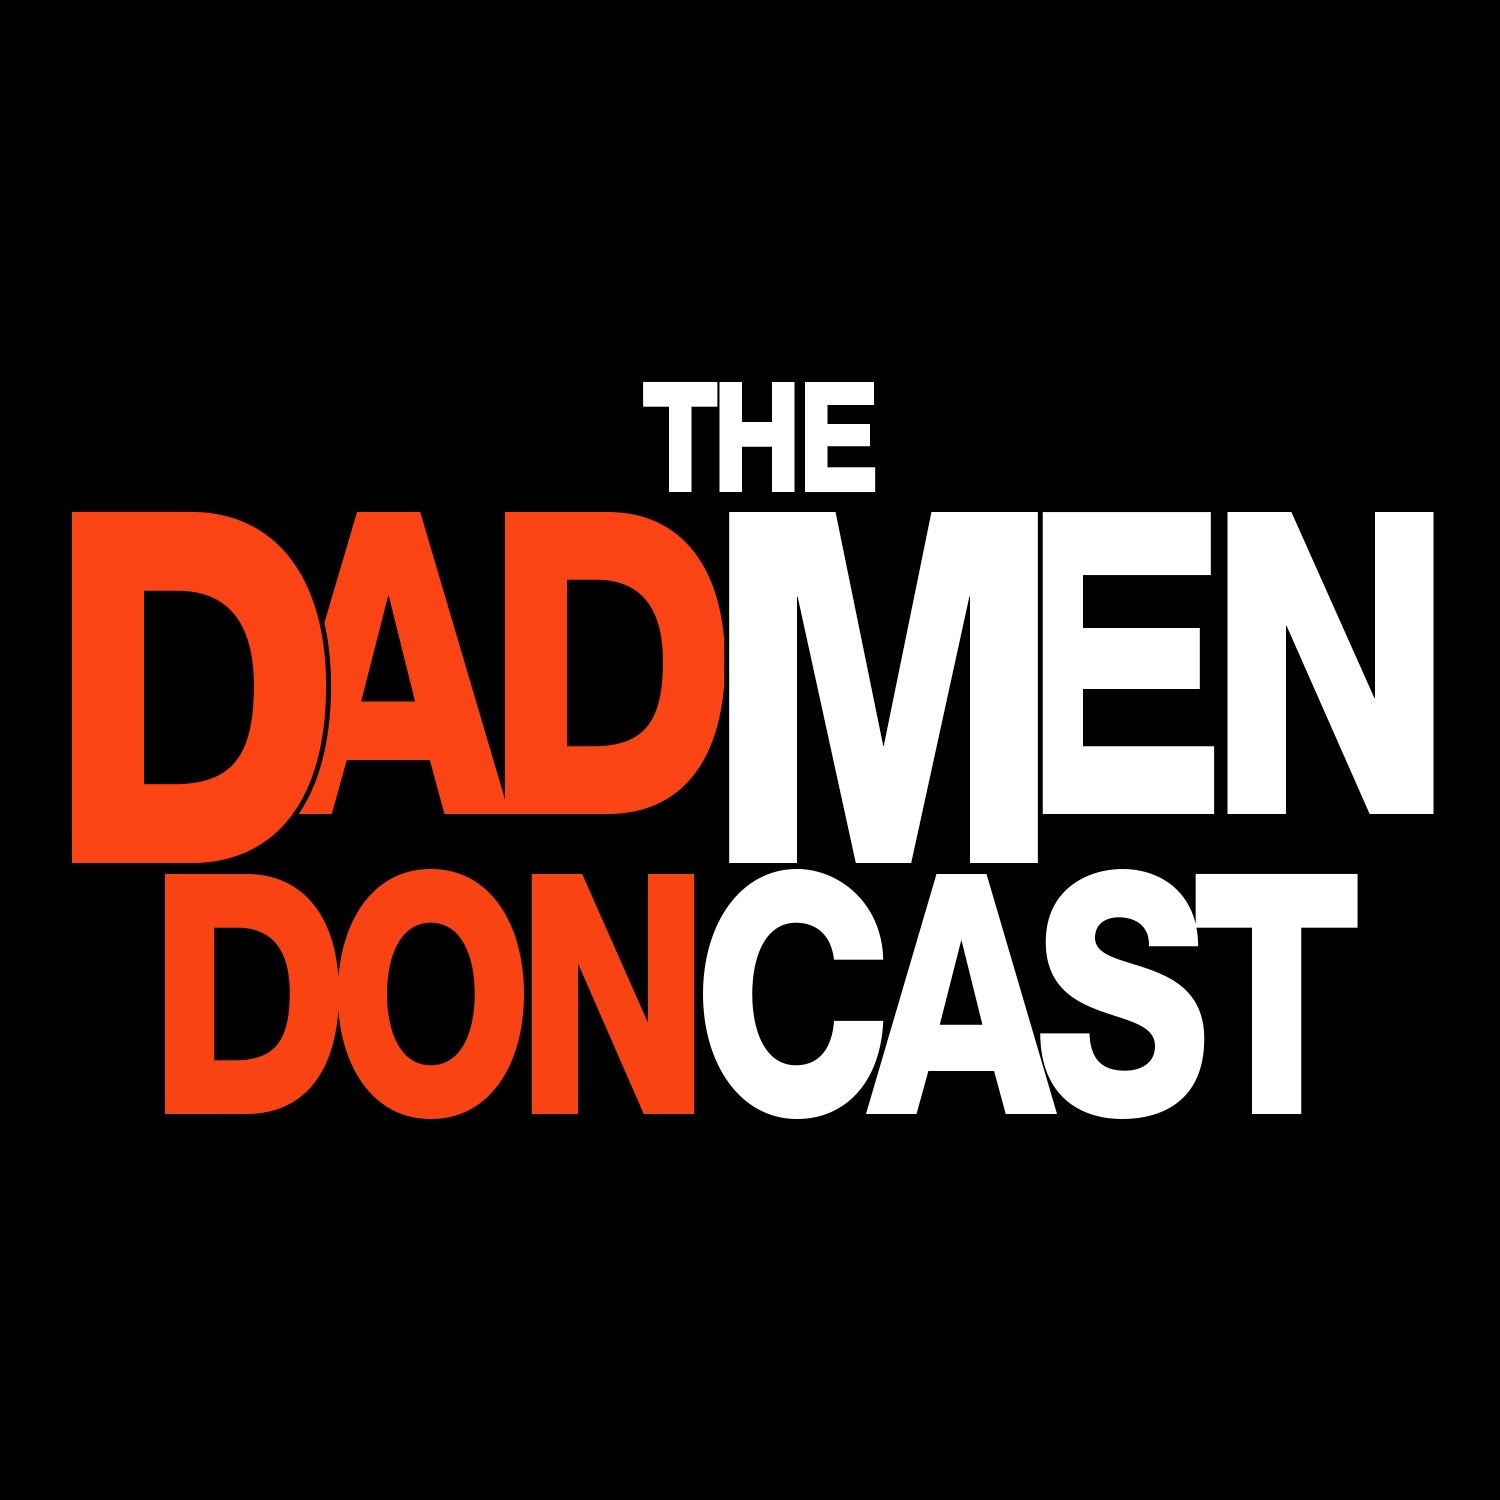 The DAD MEN Doncast